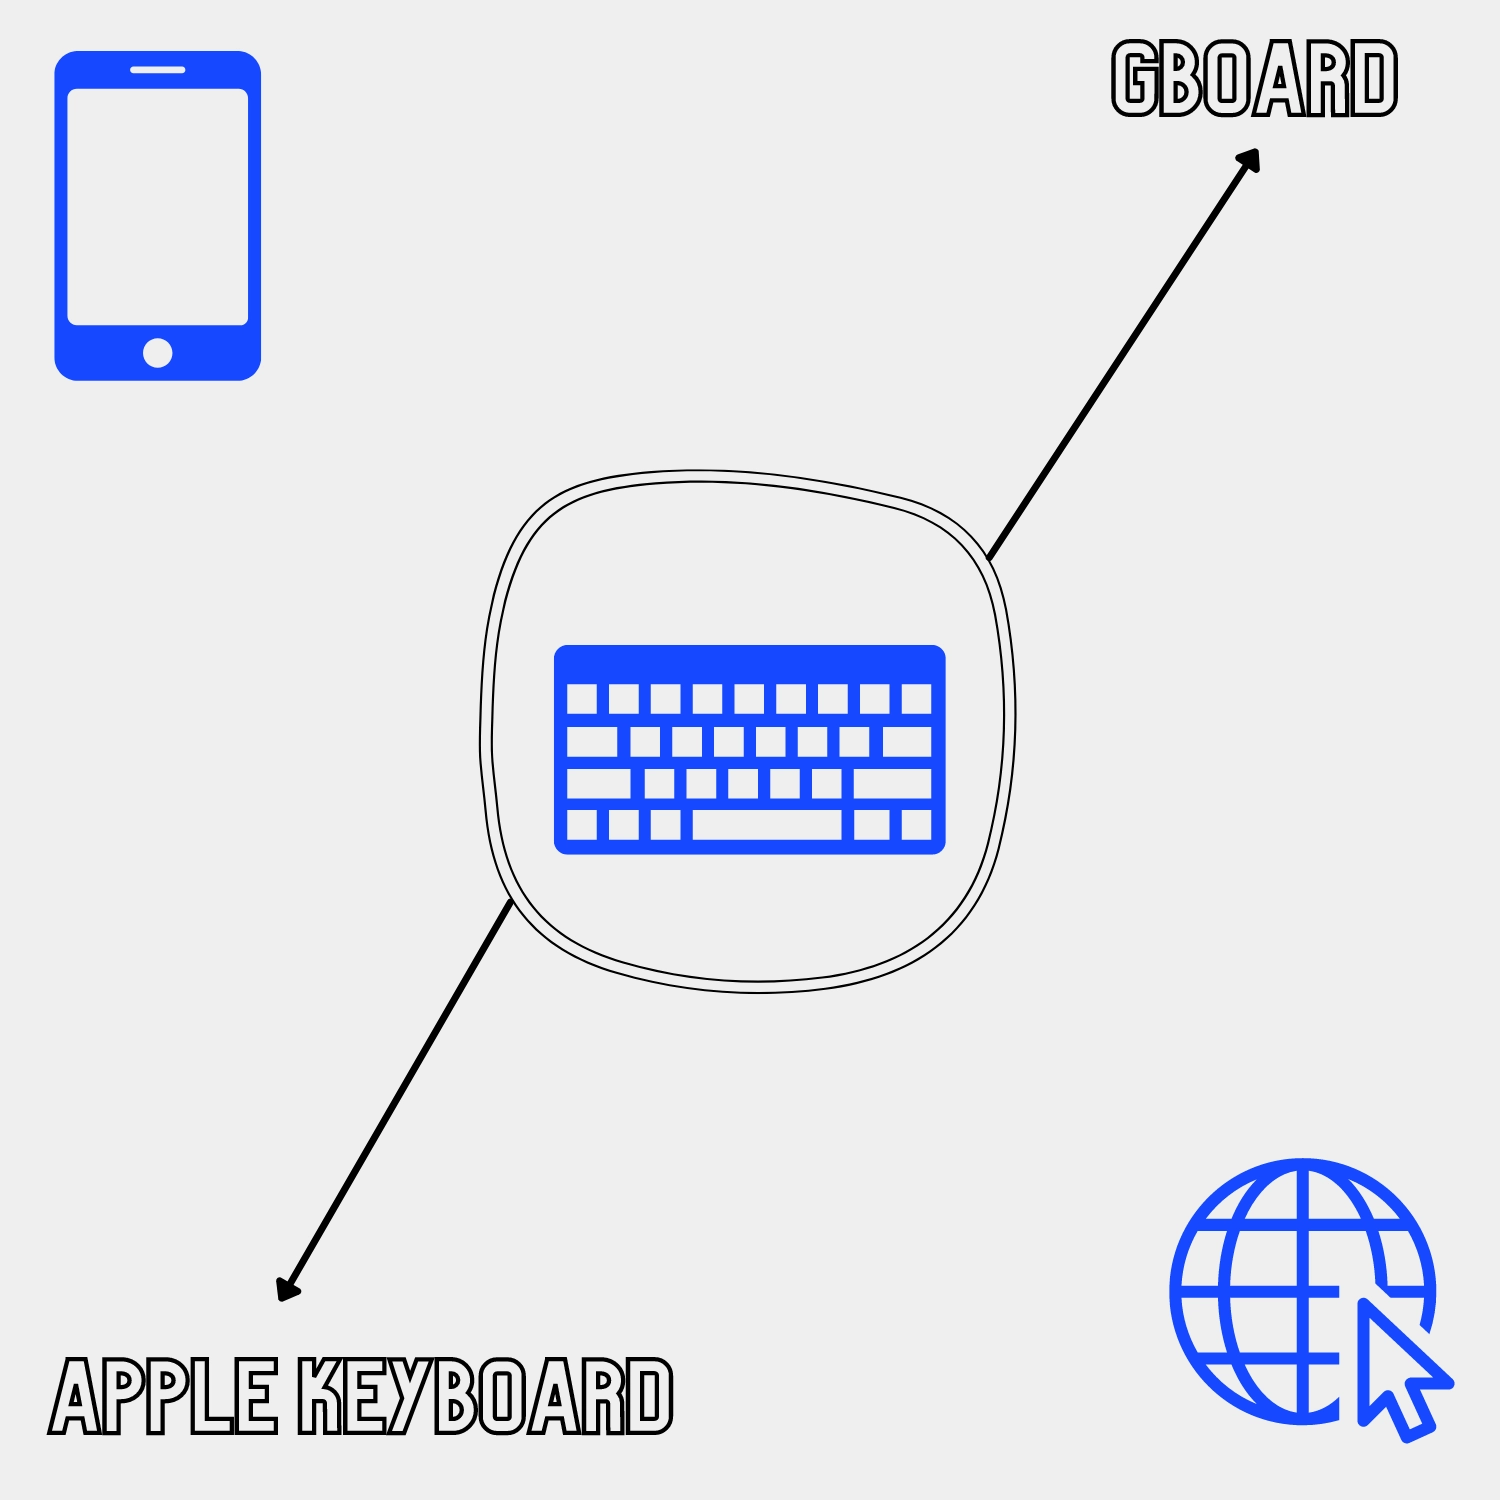 Gboard vs. Apple Keyboard